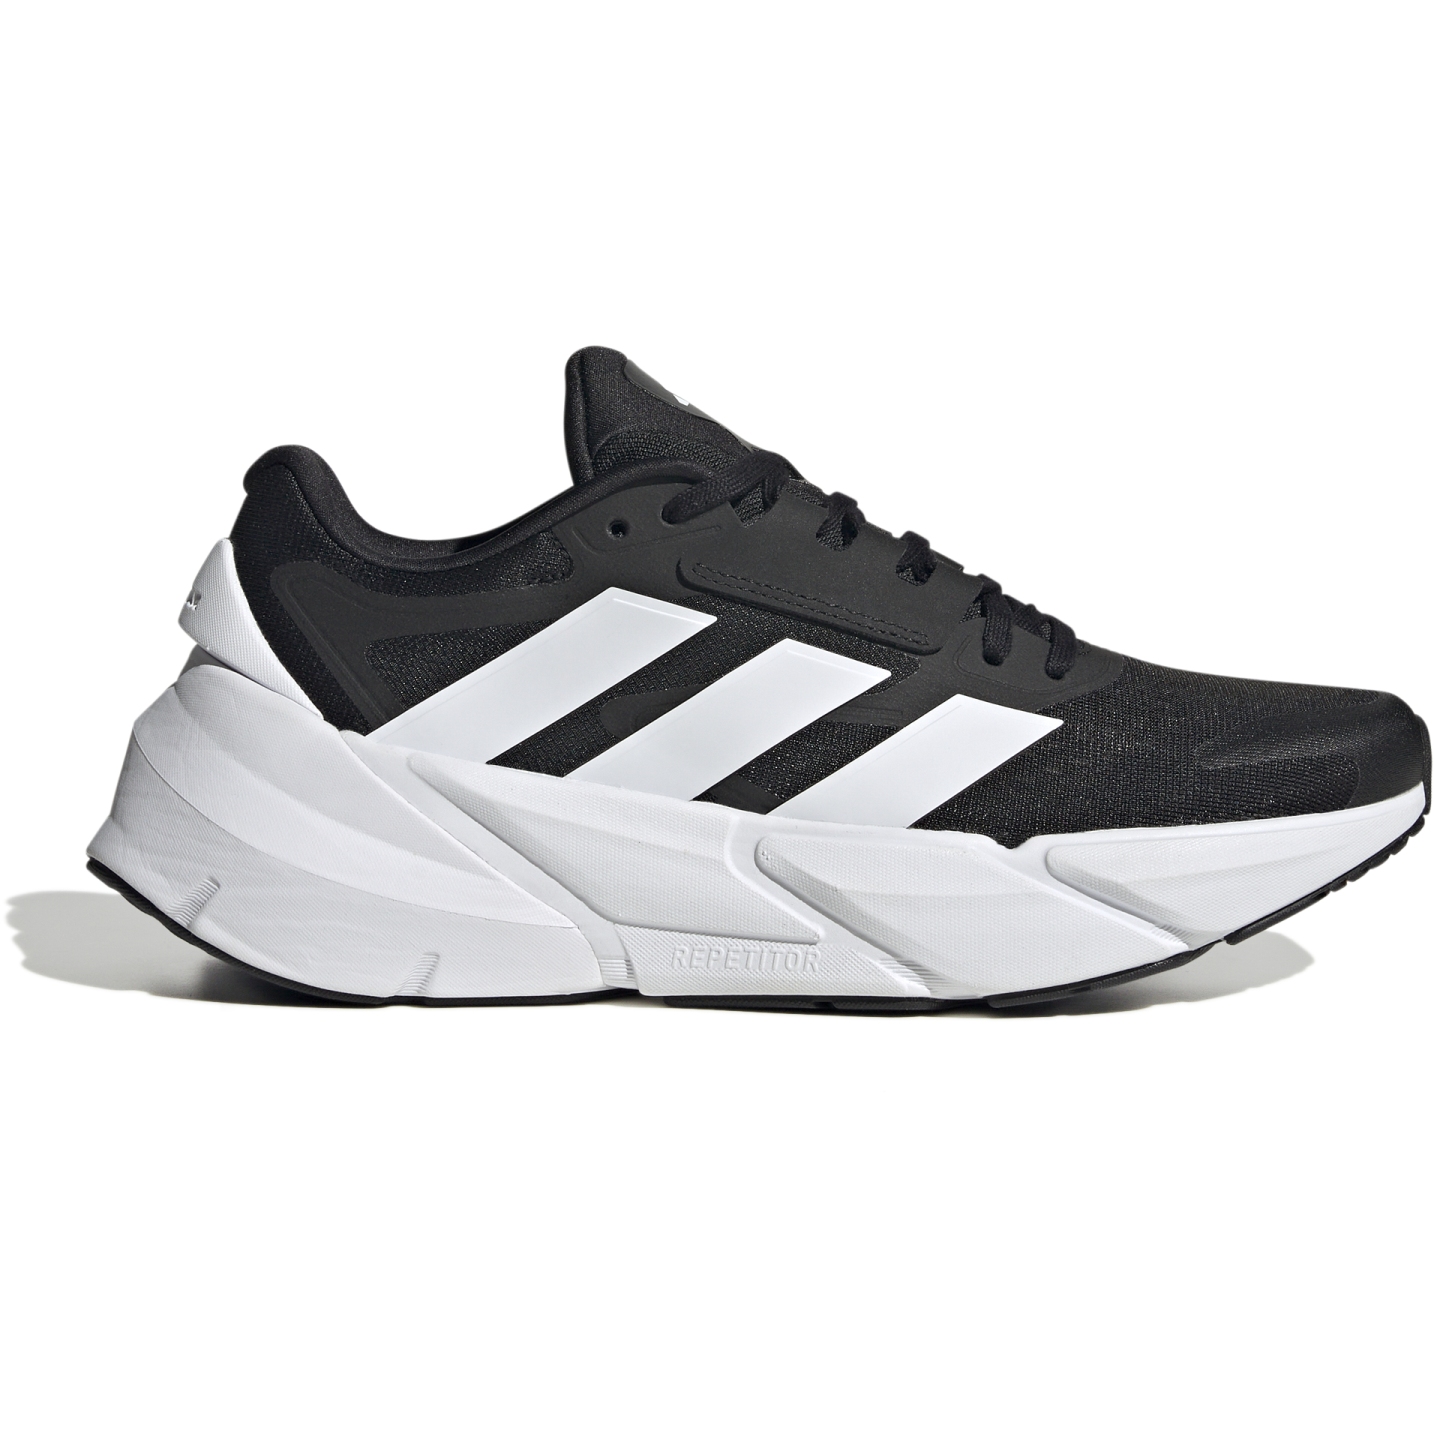 Produktbild von adidas Adistar 2.0 Laufschuhe Herren - core black/footwear white/core black HP2335